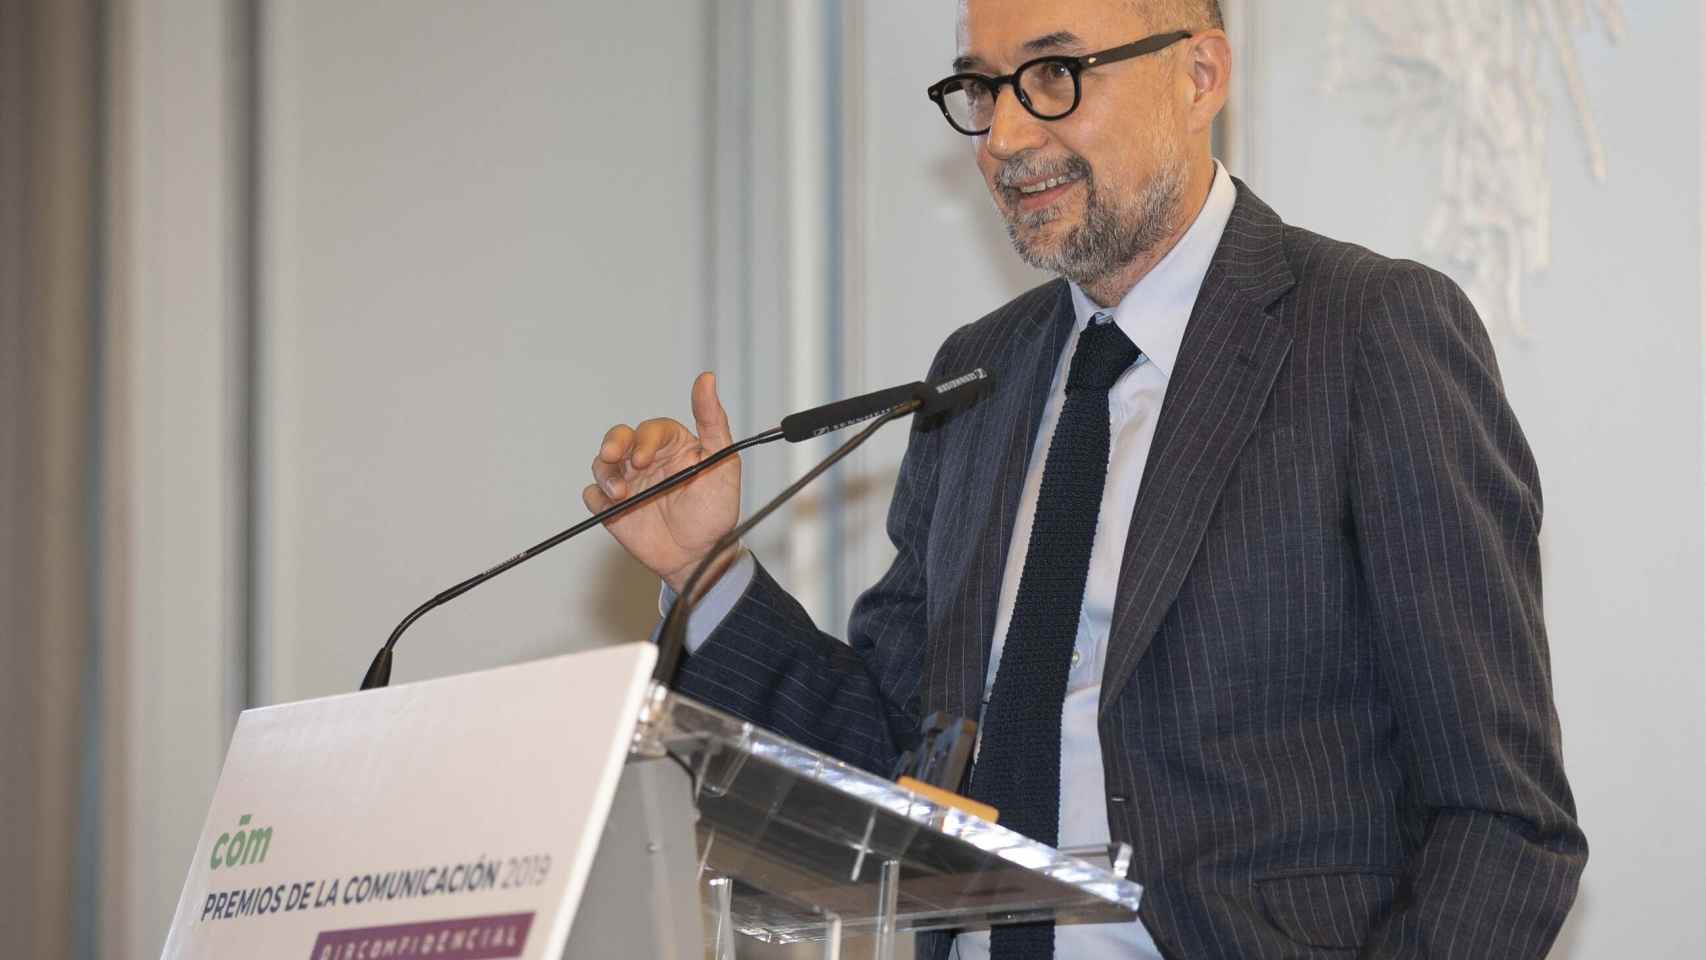 Andrés Rodríguez, editor y presidente de Spainmedia, durante la entrega de galardones.